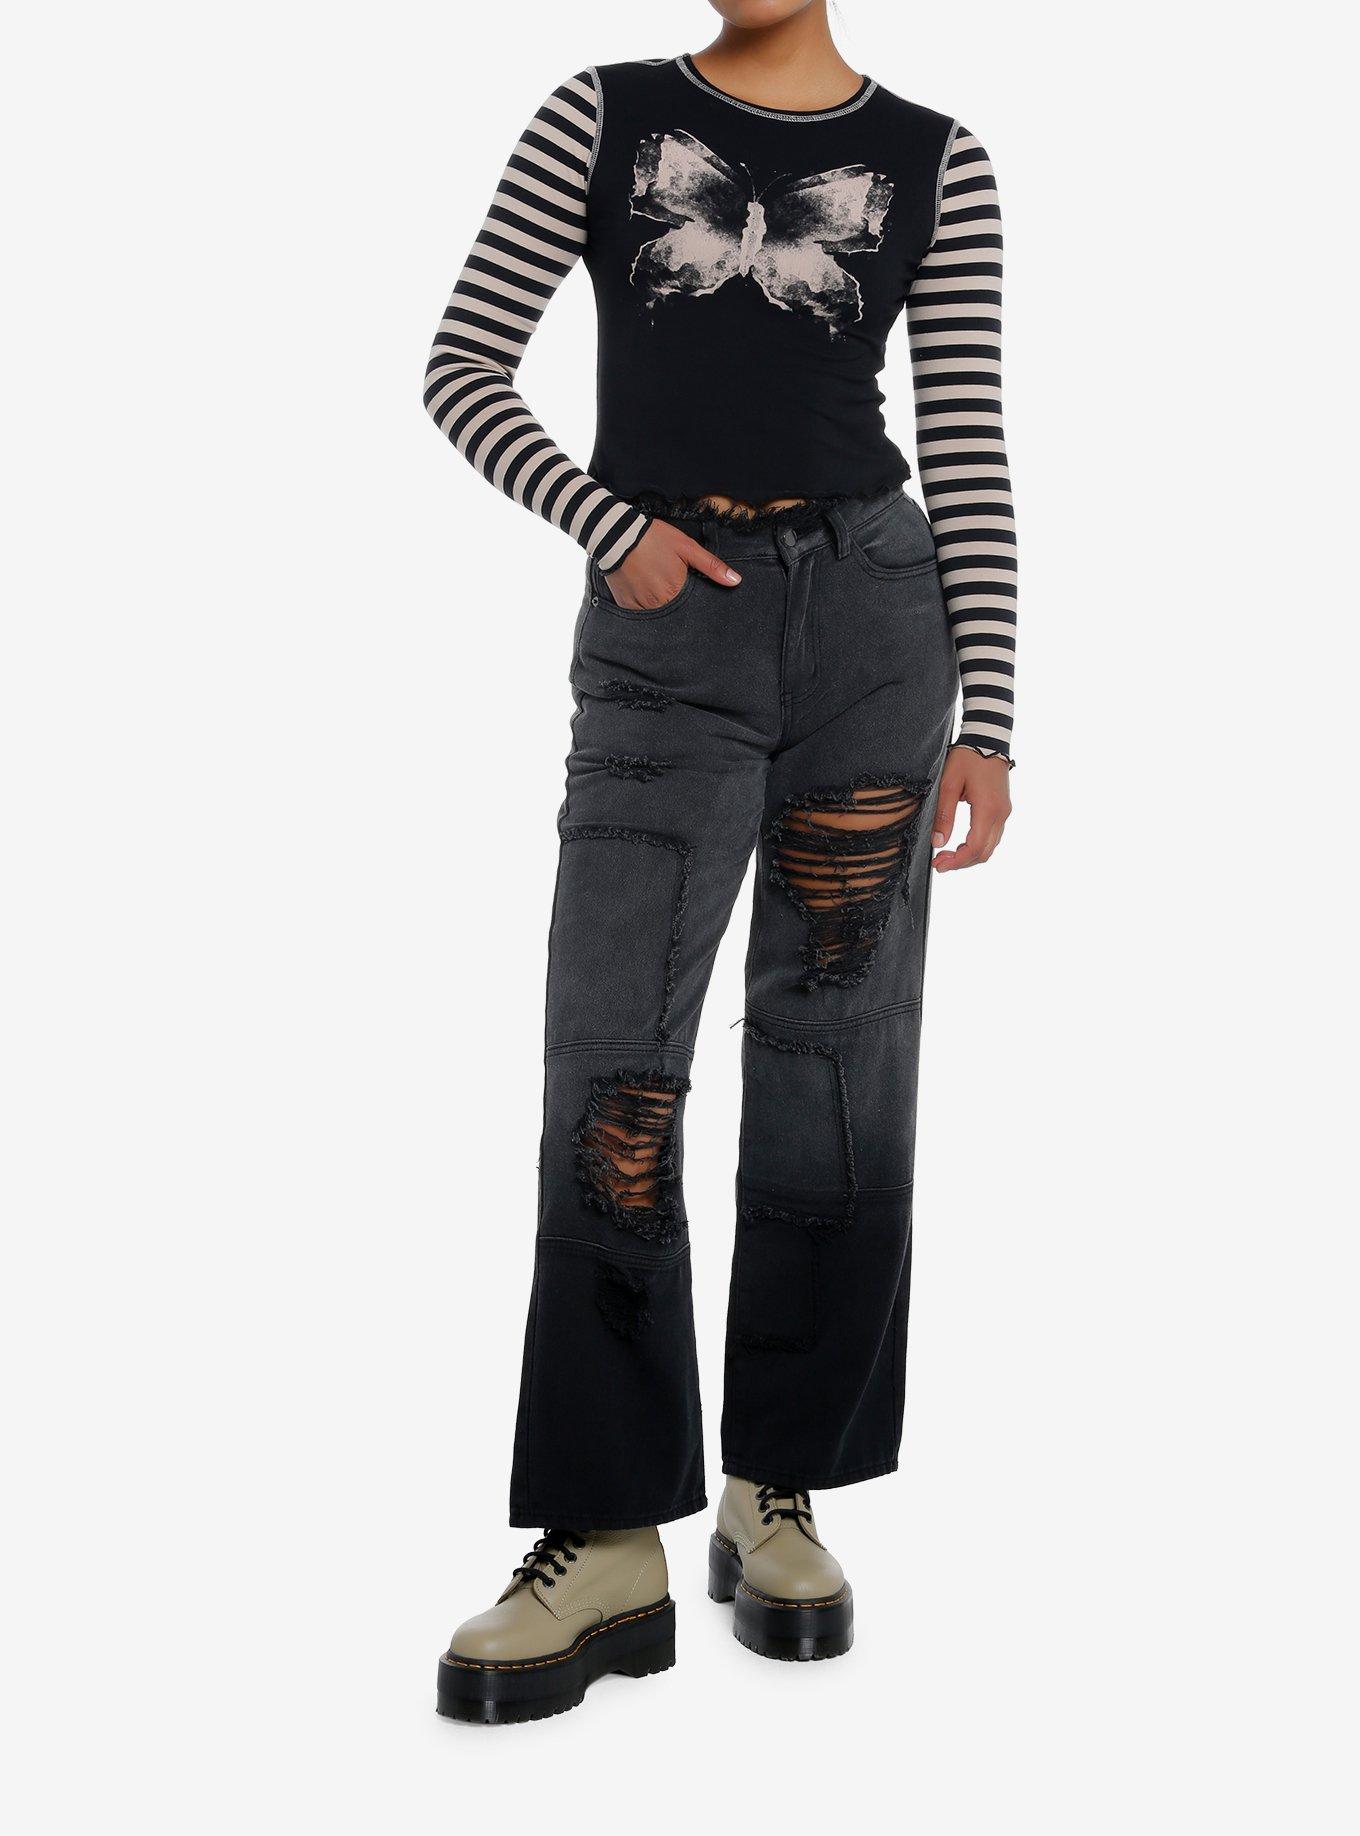 Social Collision Black & Beige Butterfly Stripe Girls Long-Sleeve Top